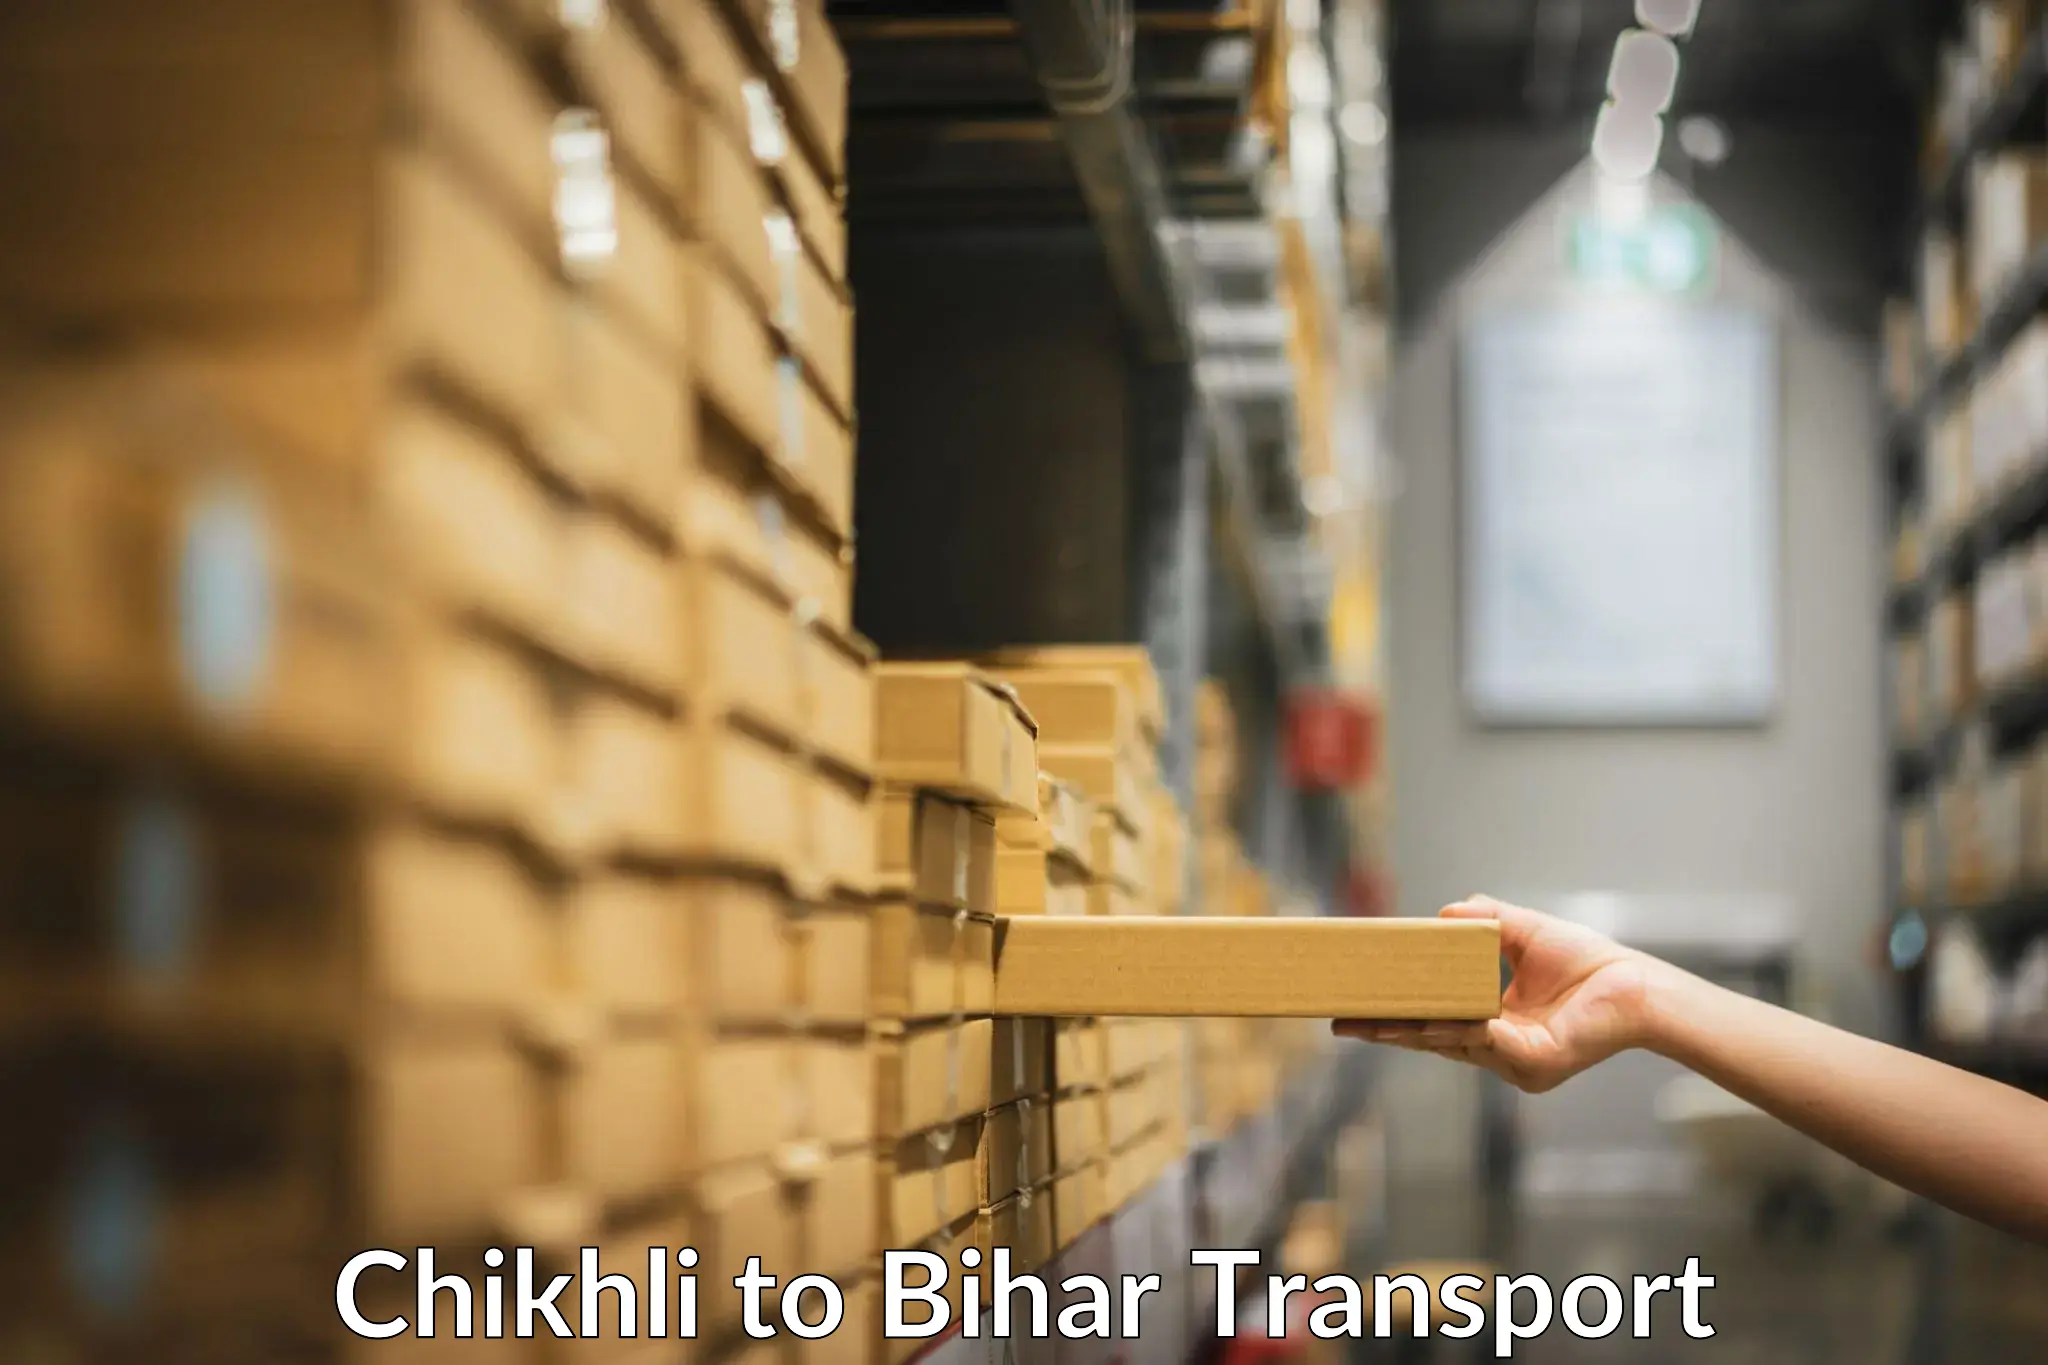 International cargo transportation services Chikhli to Khizarsarai